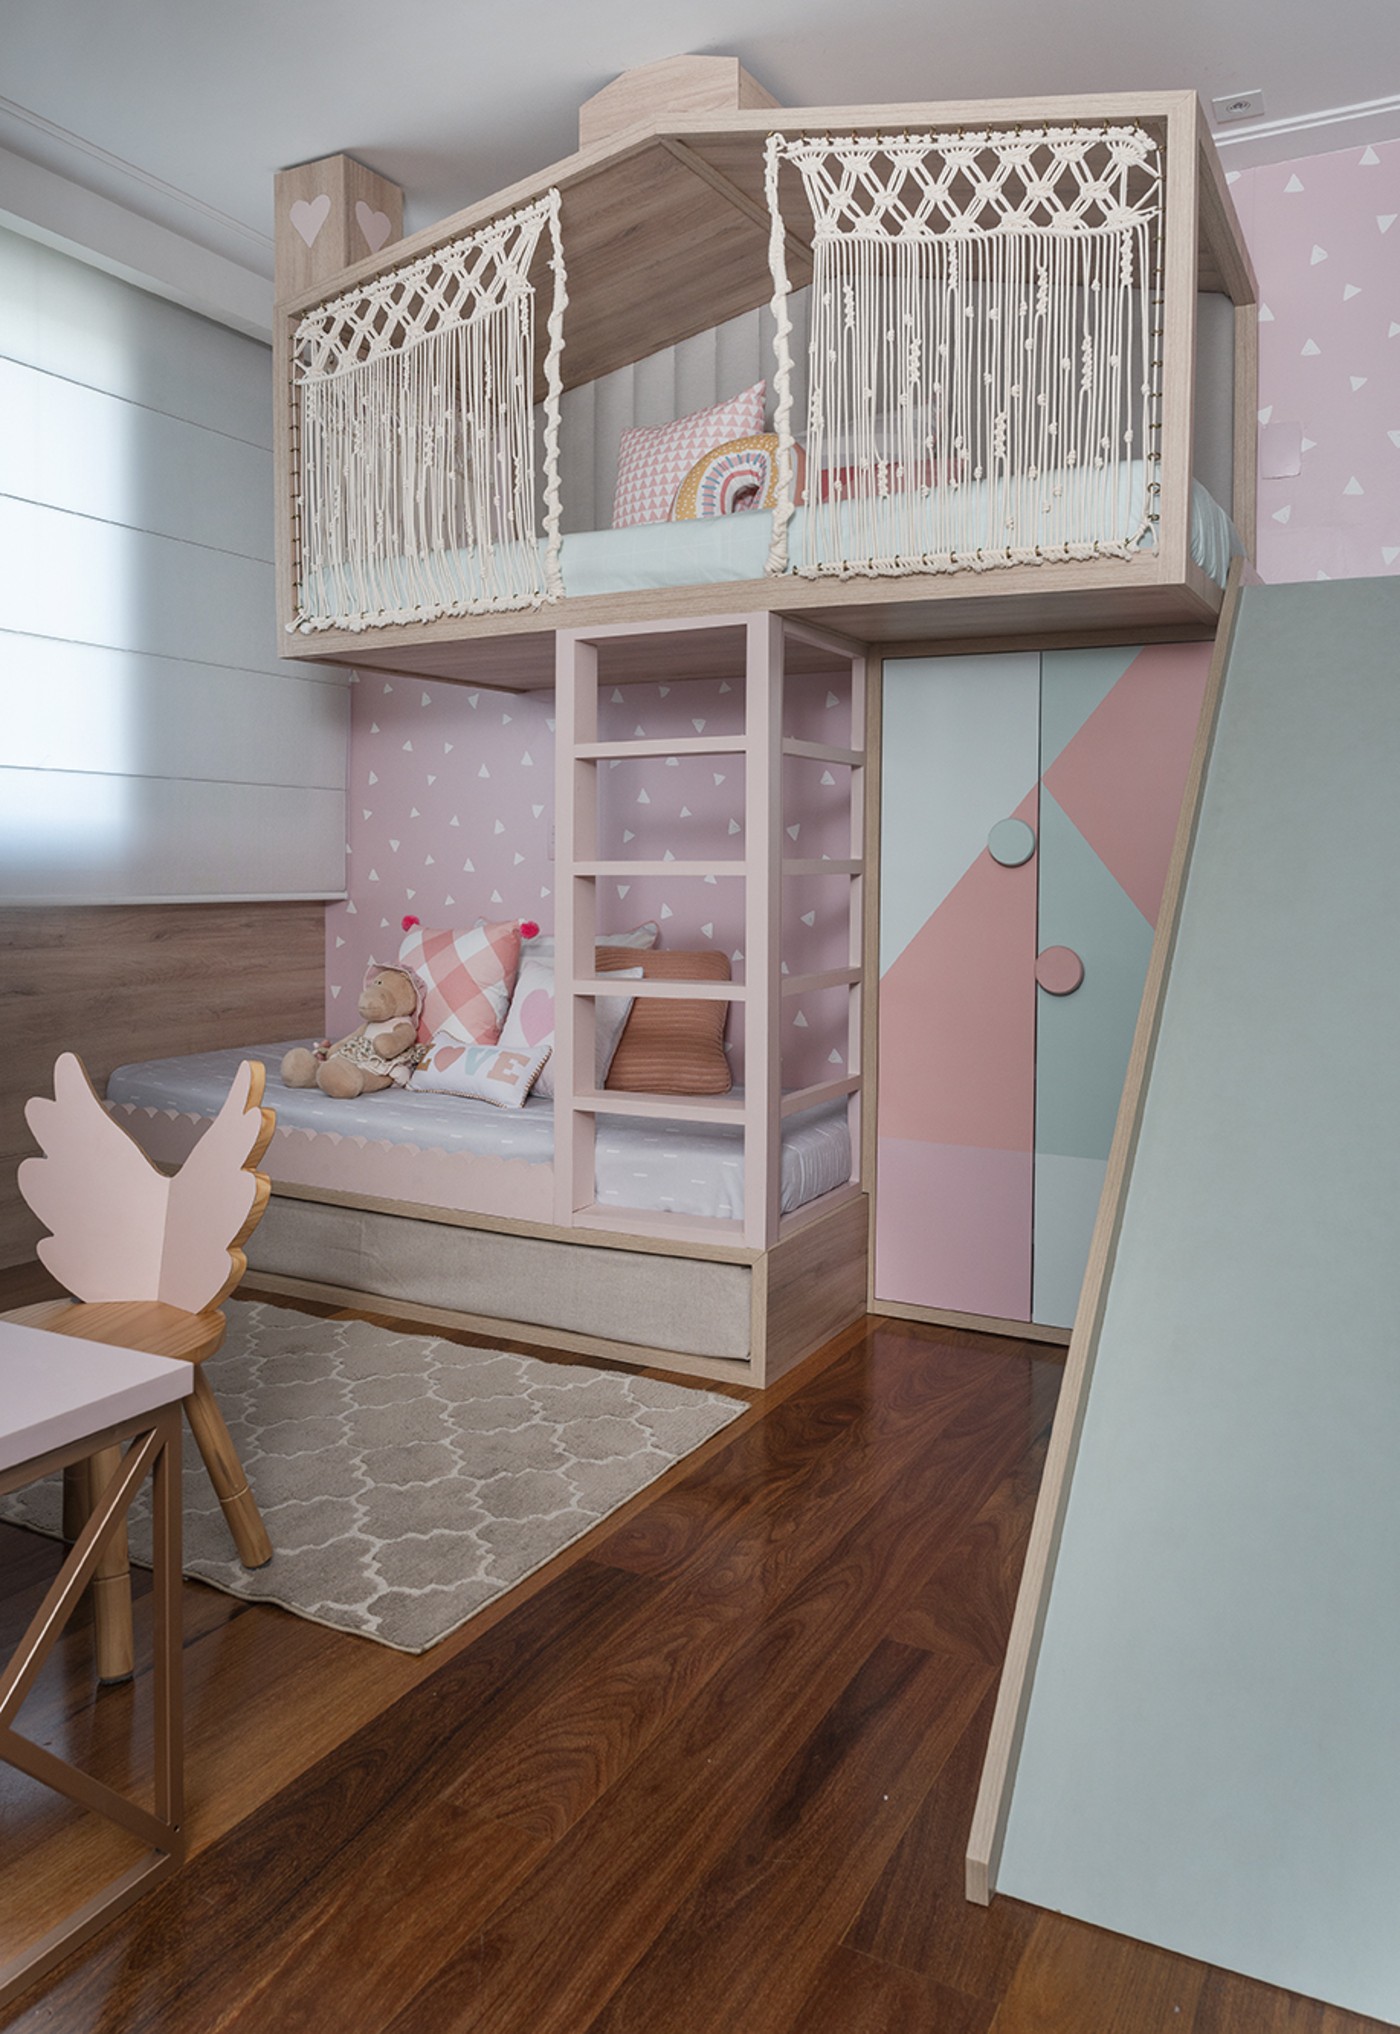 Décor do dia: quarto infantil vira playground com cama casinha e escorregador (Foto: Manu Oristanio)